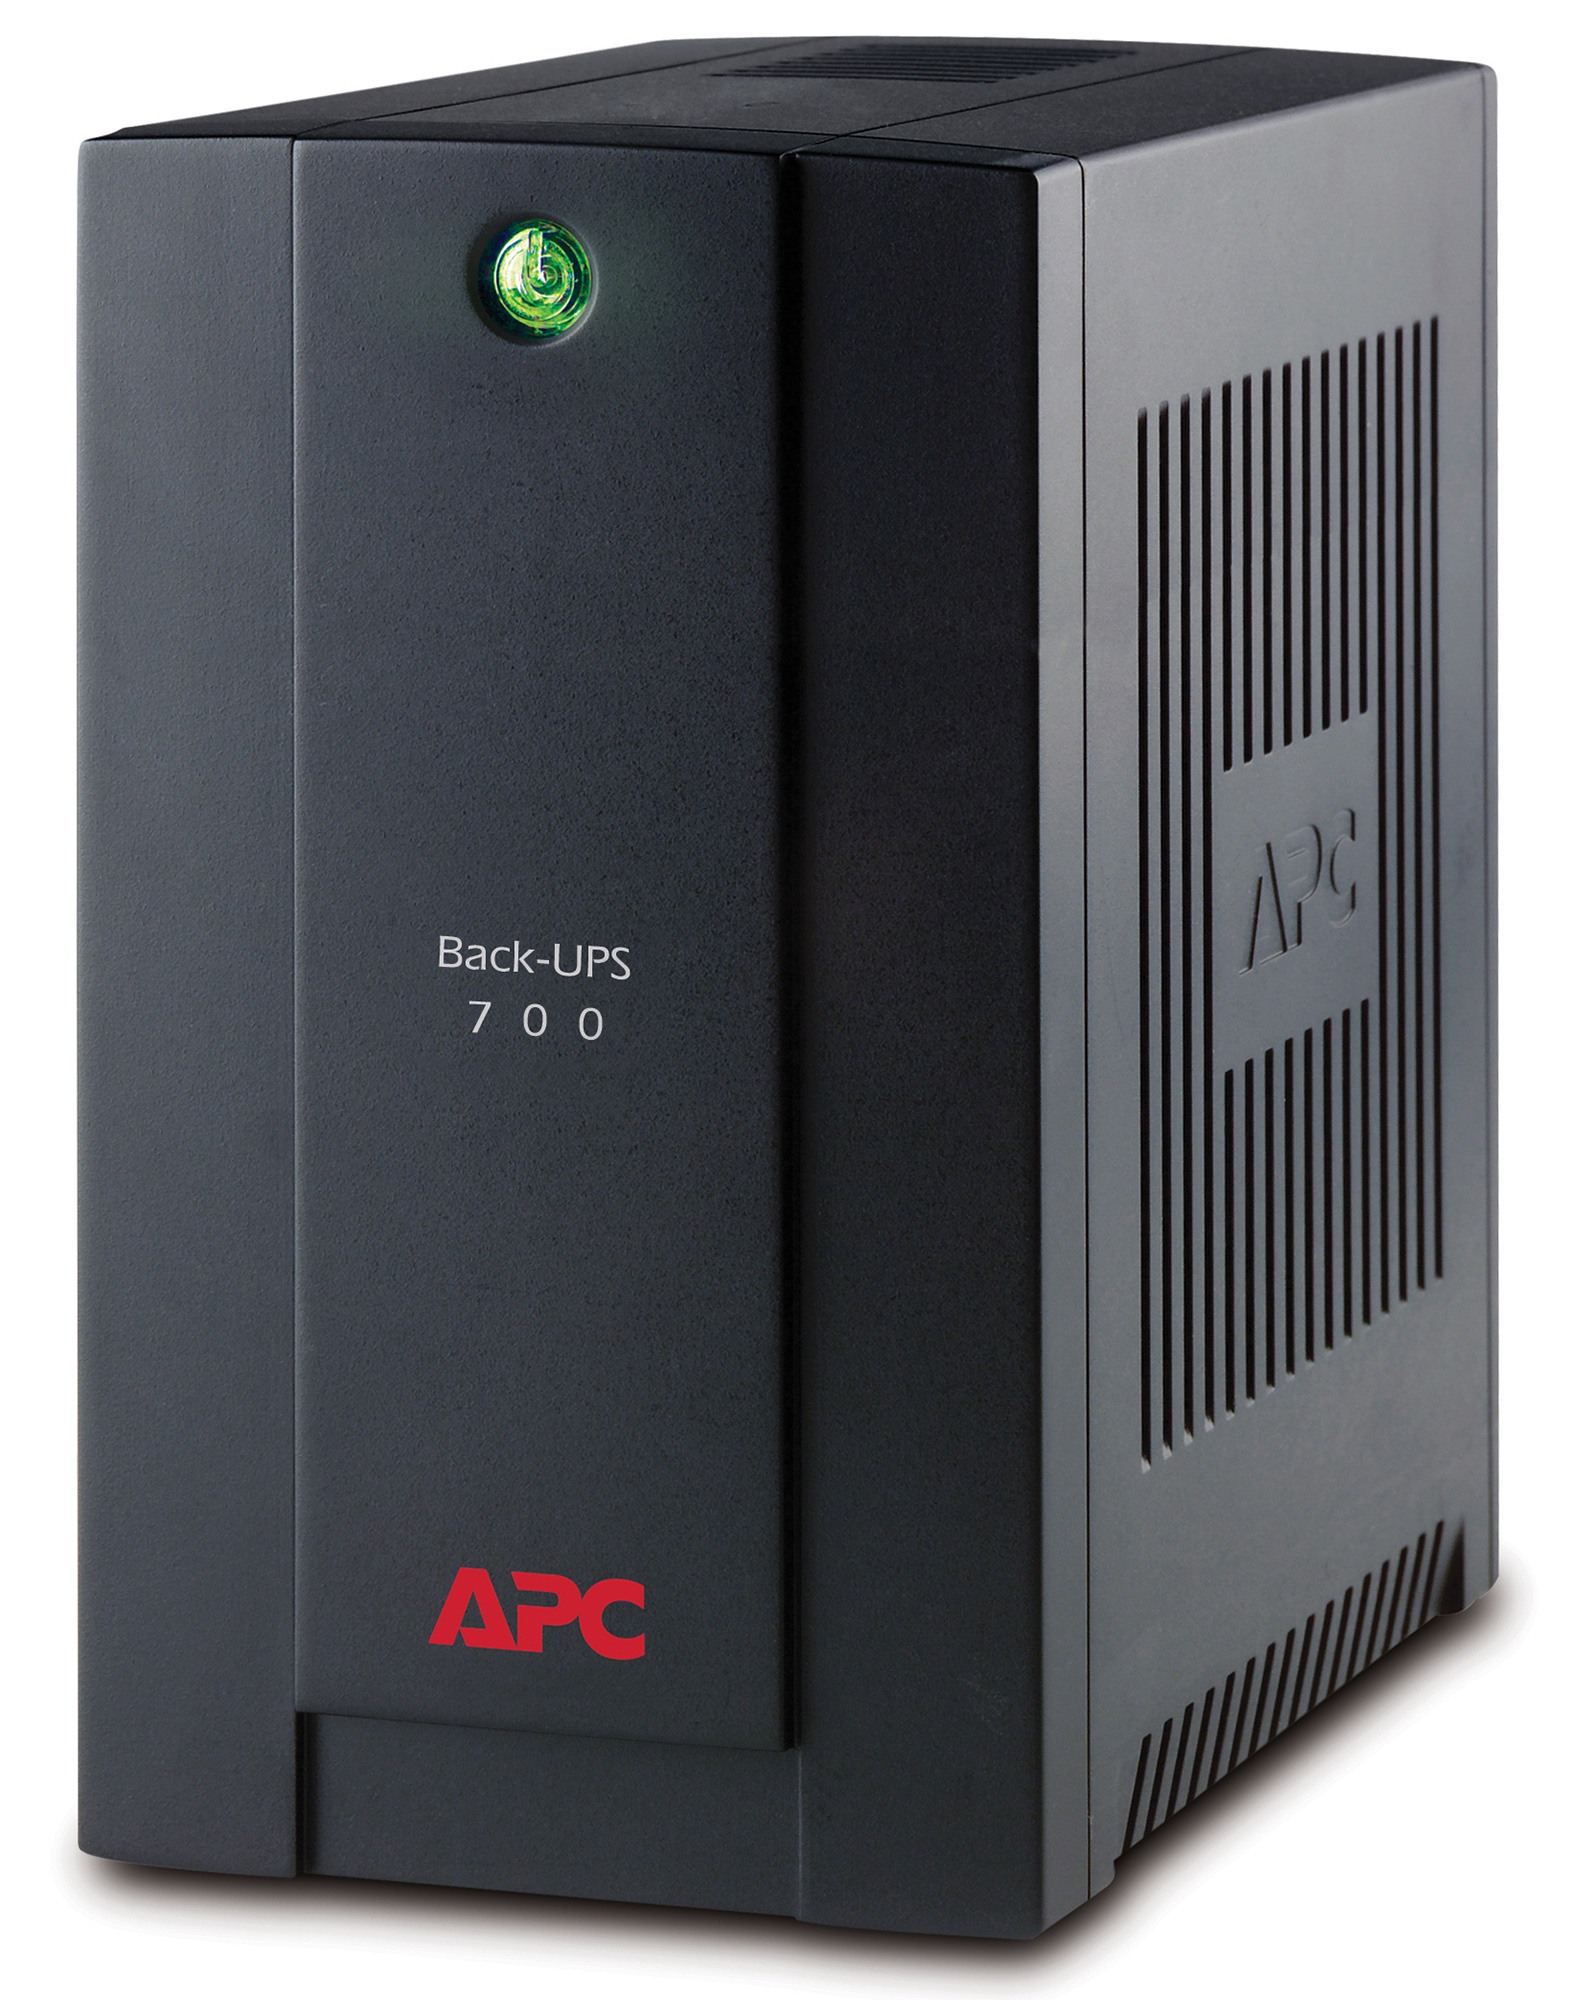 APC Back-ups 700VA, 230v, AVR, IEC Sockets